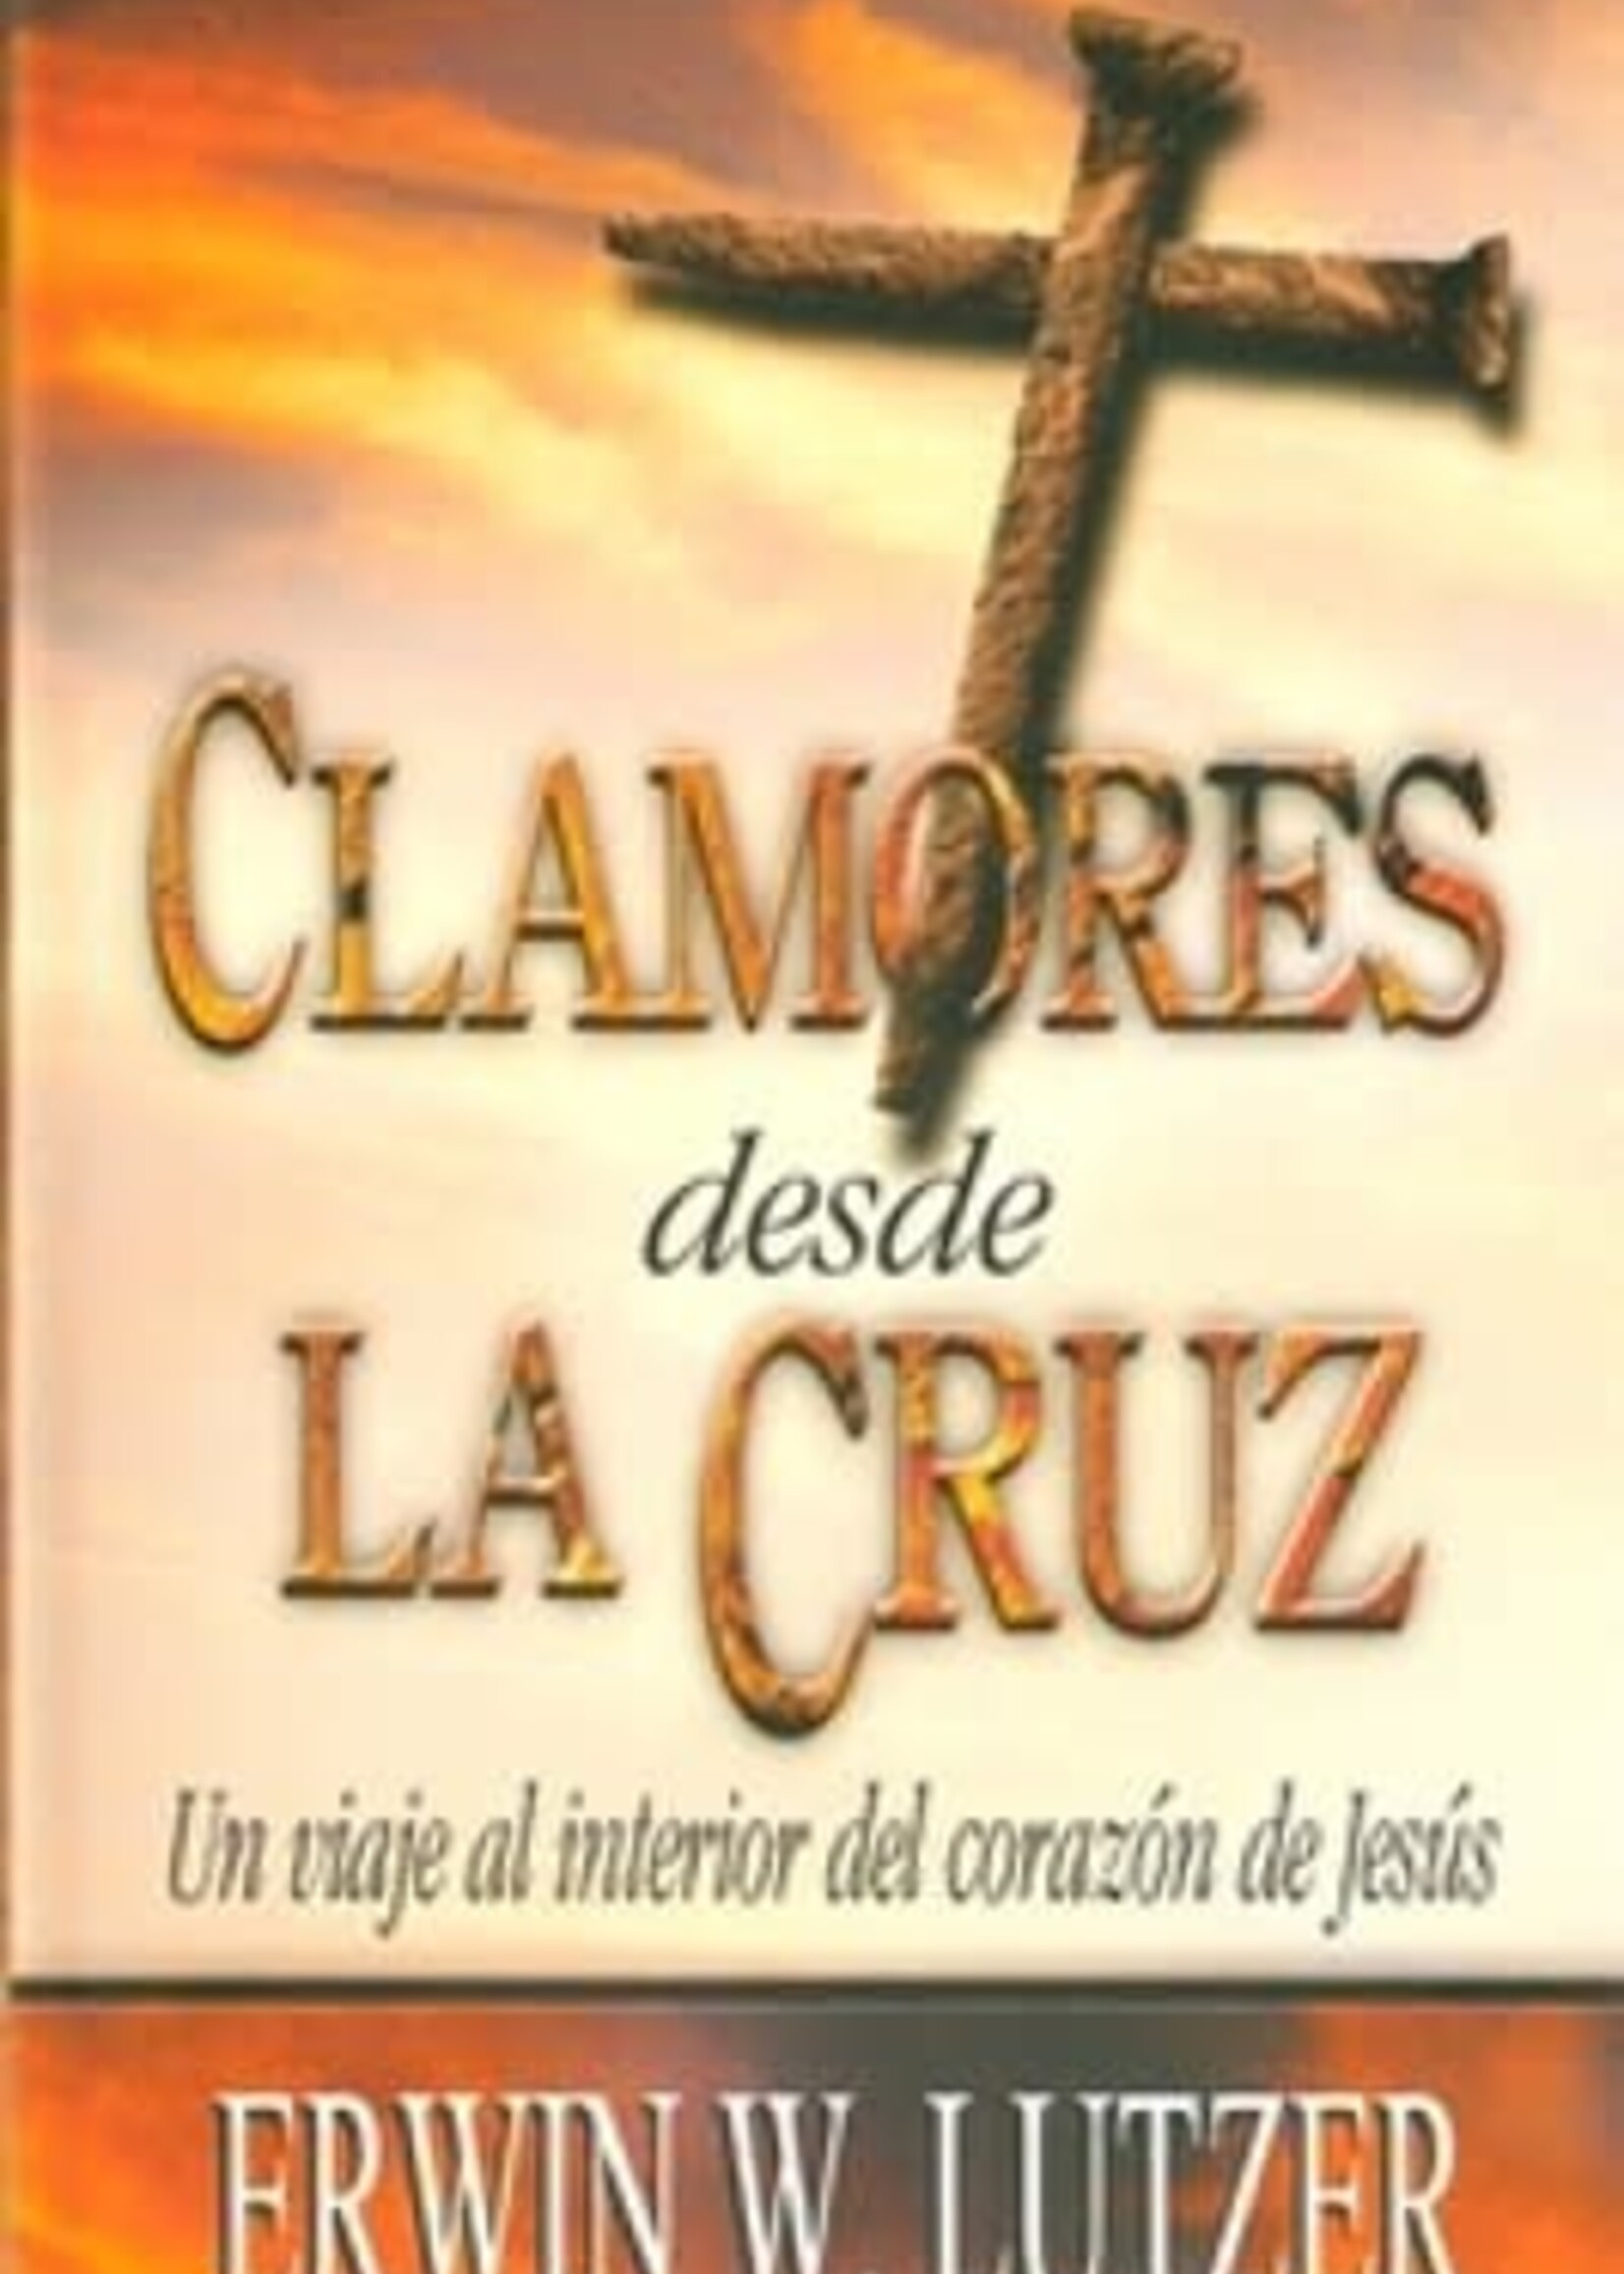 CLC CLAMORES DESDE LA CRUZ: UN VIAJE AL INTERIOR DEL CORAZON DE JESUS